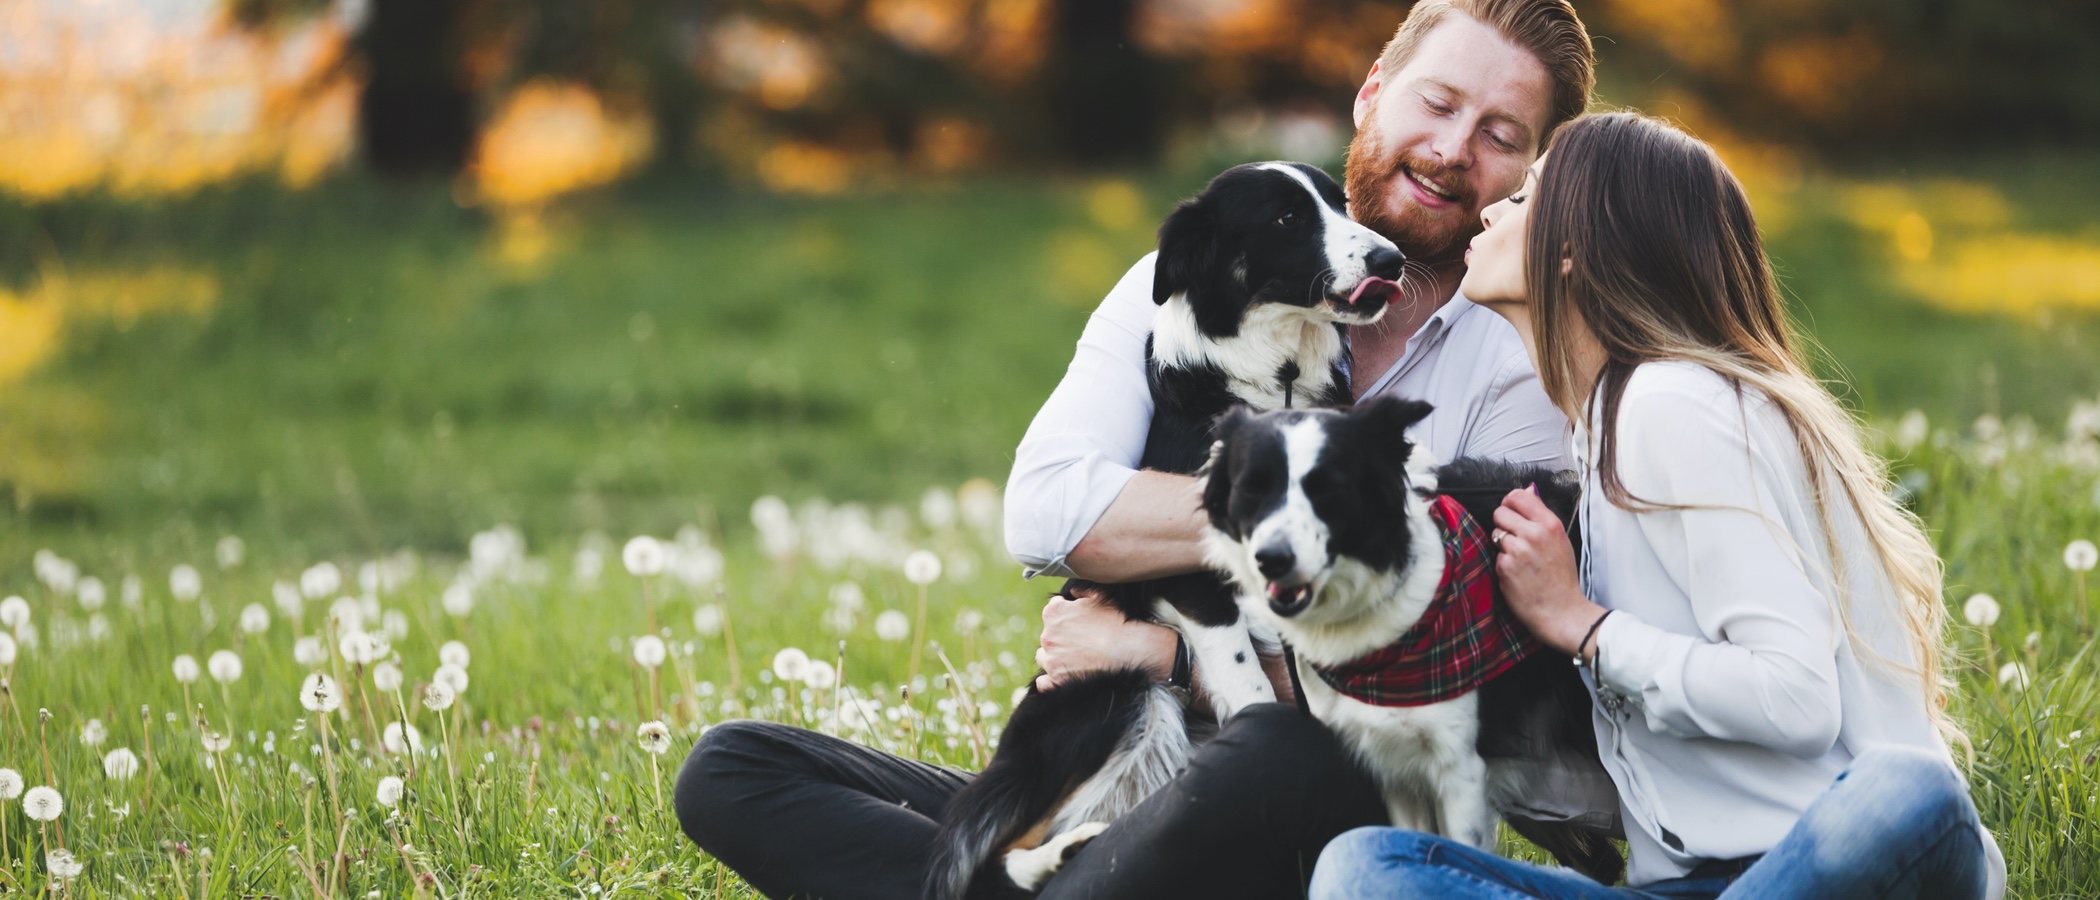 Perros y relaciones de pareja: cómo influyen y qué aportan